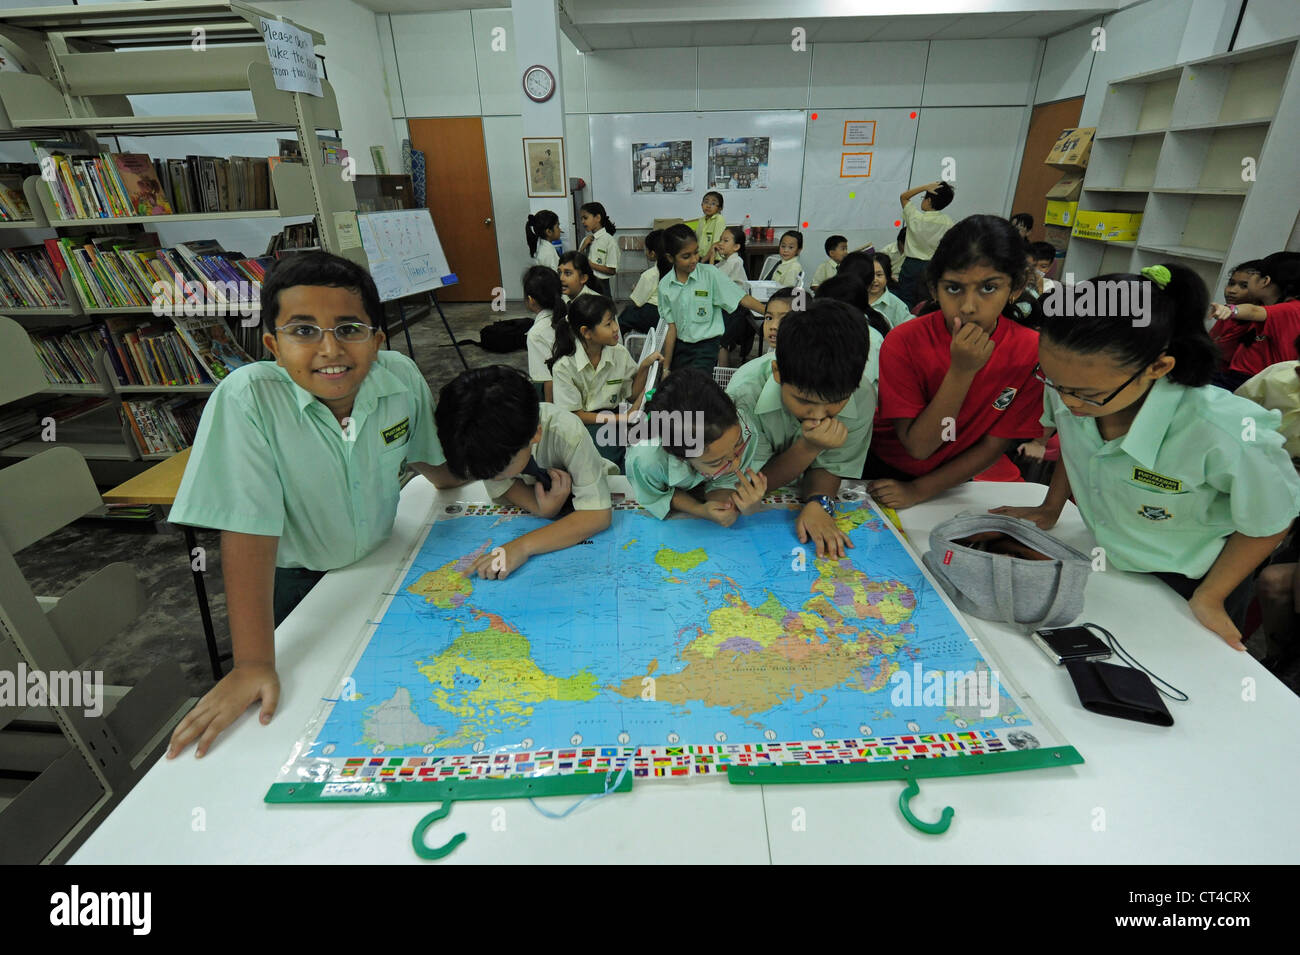 Malaysia, Kuala Lumpur, children looking at world map Stock Photo